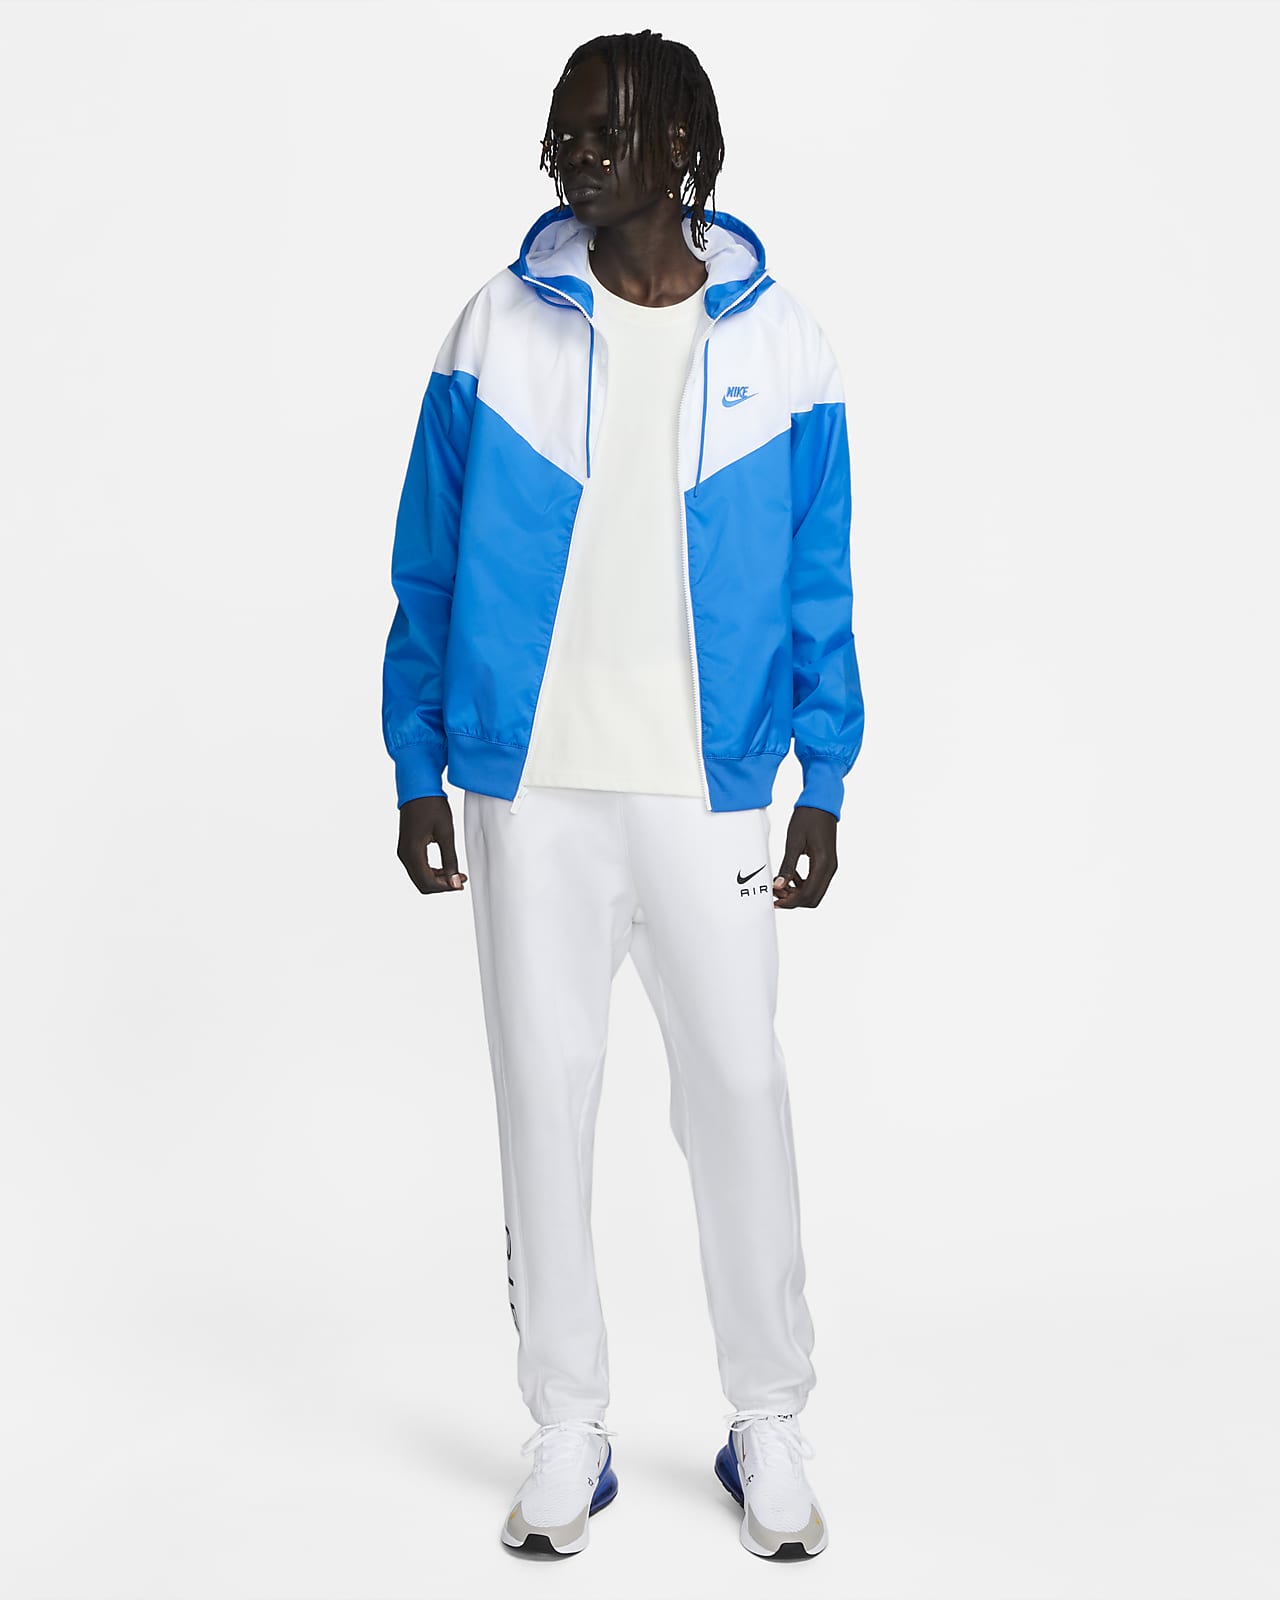 Nike Sportswear Windrunner Men's Hooded Jacket. Nike LU